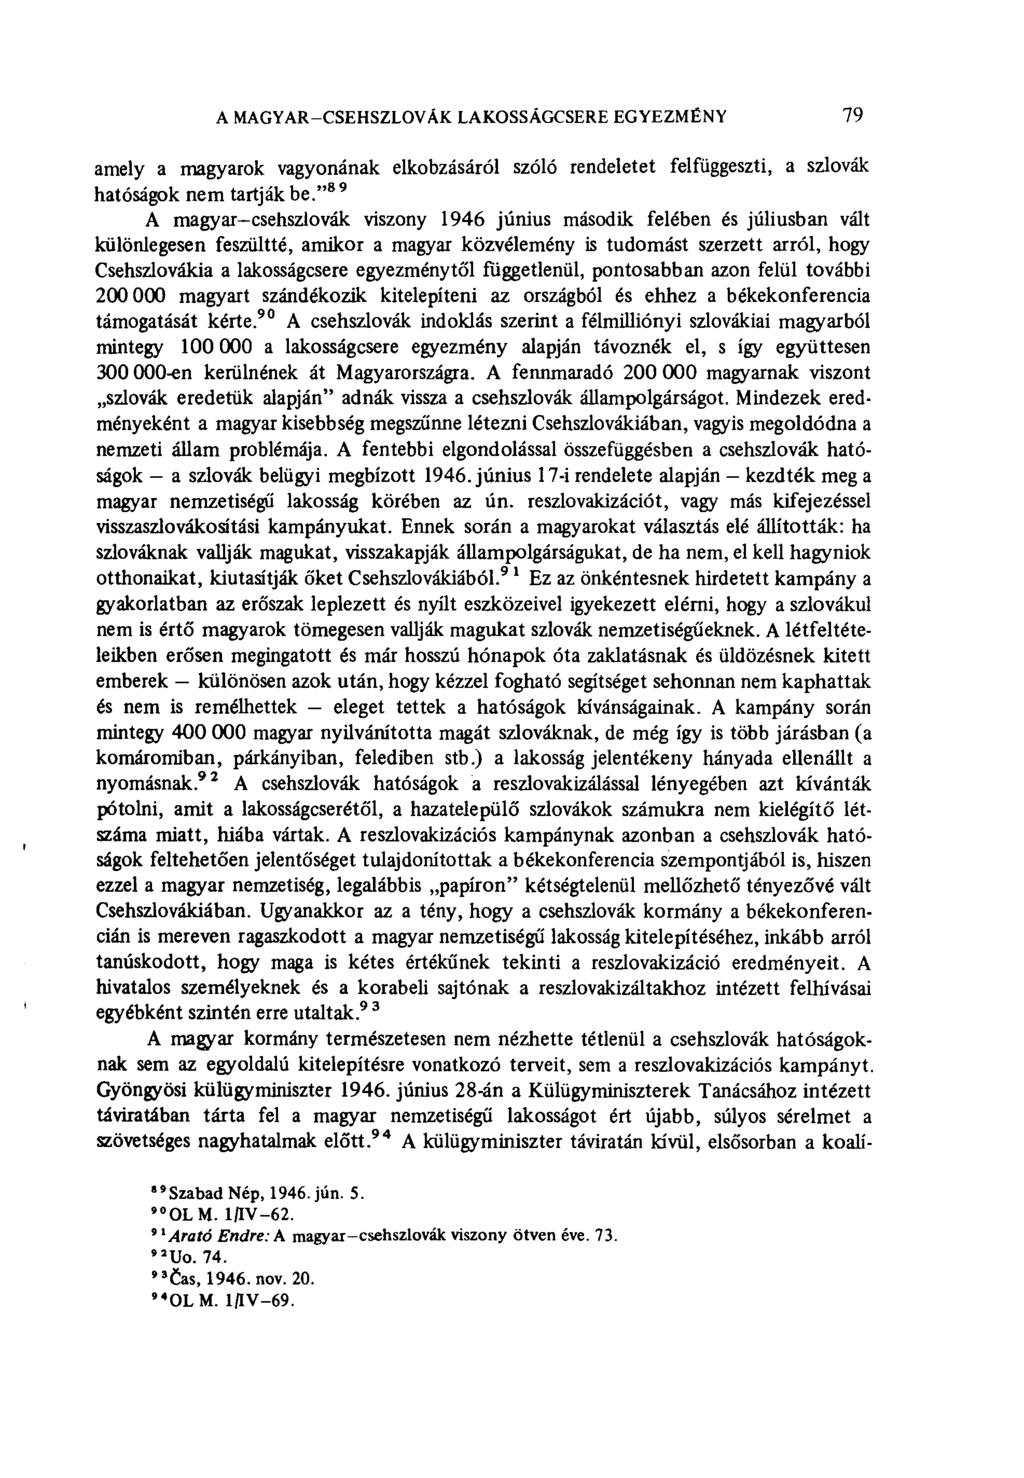 A MAGYAR-CSEHSZLOVÁK LAKOSSÁGCSERE EGYEZMÉNY 79 amely a magyarok vagyonának elkobzásáról szóló rendeletet felfüggeszti, a szlovák hatóságok nem tartják be.